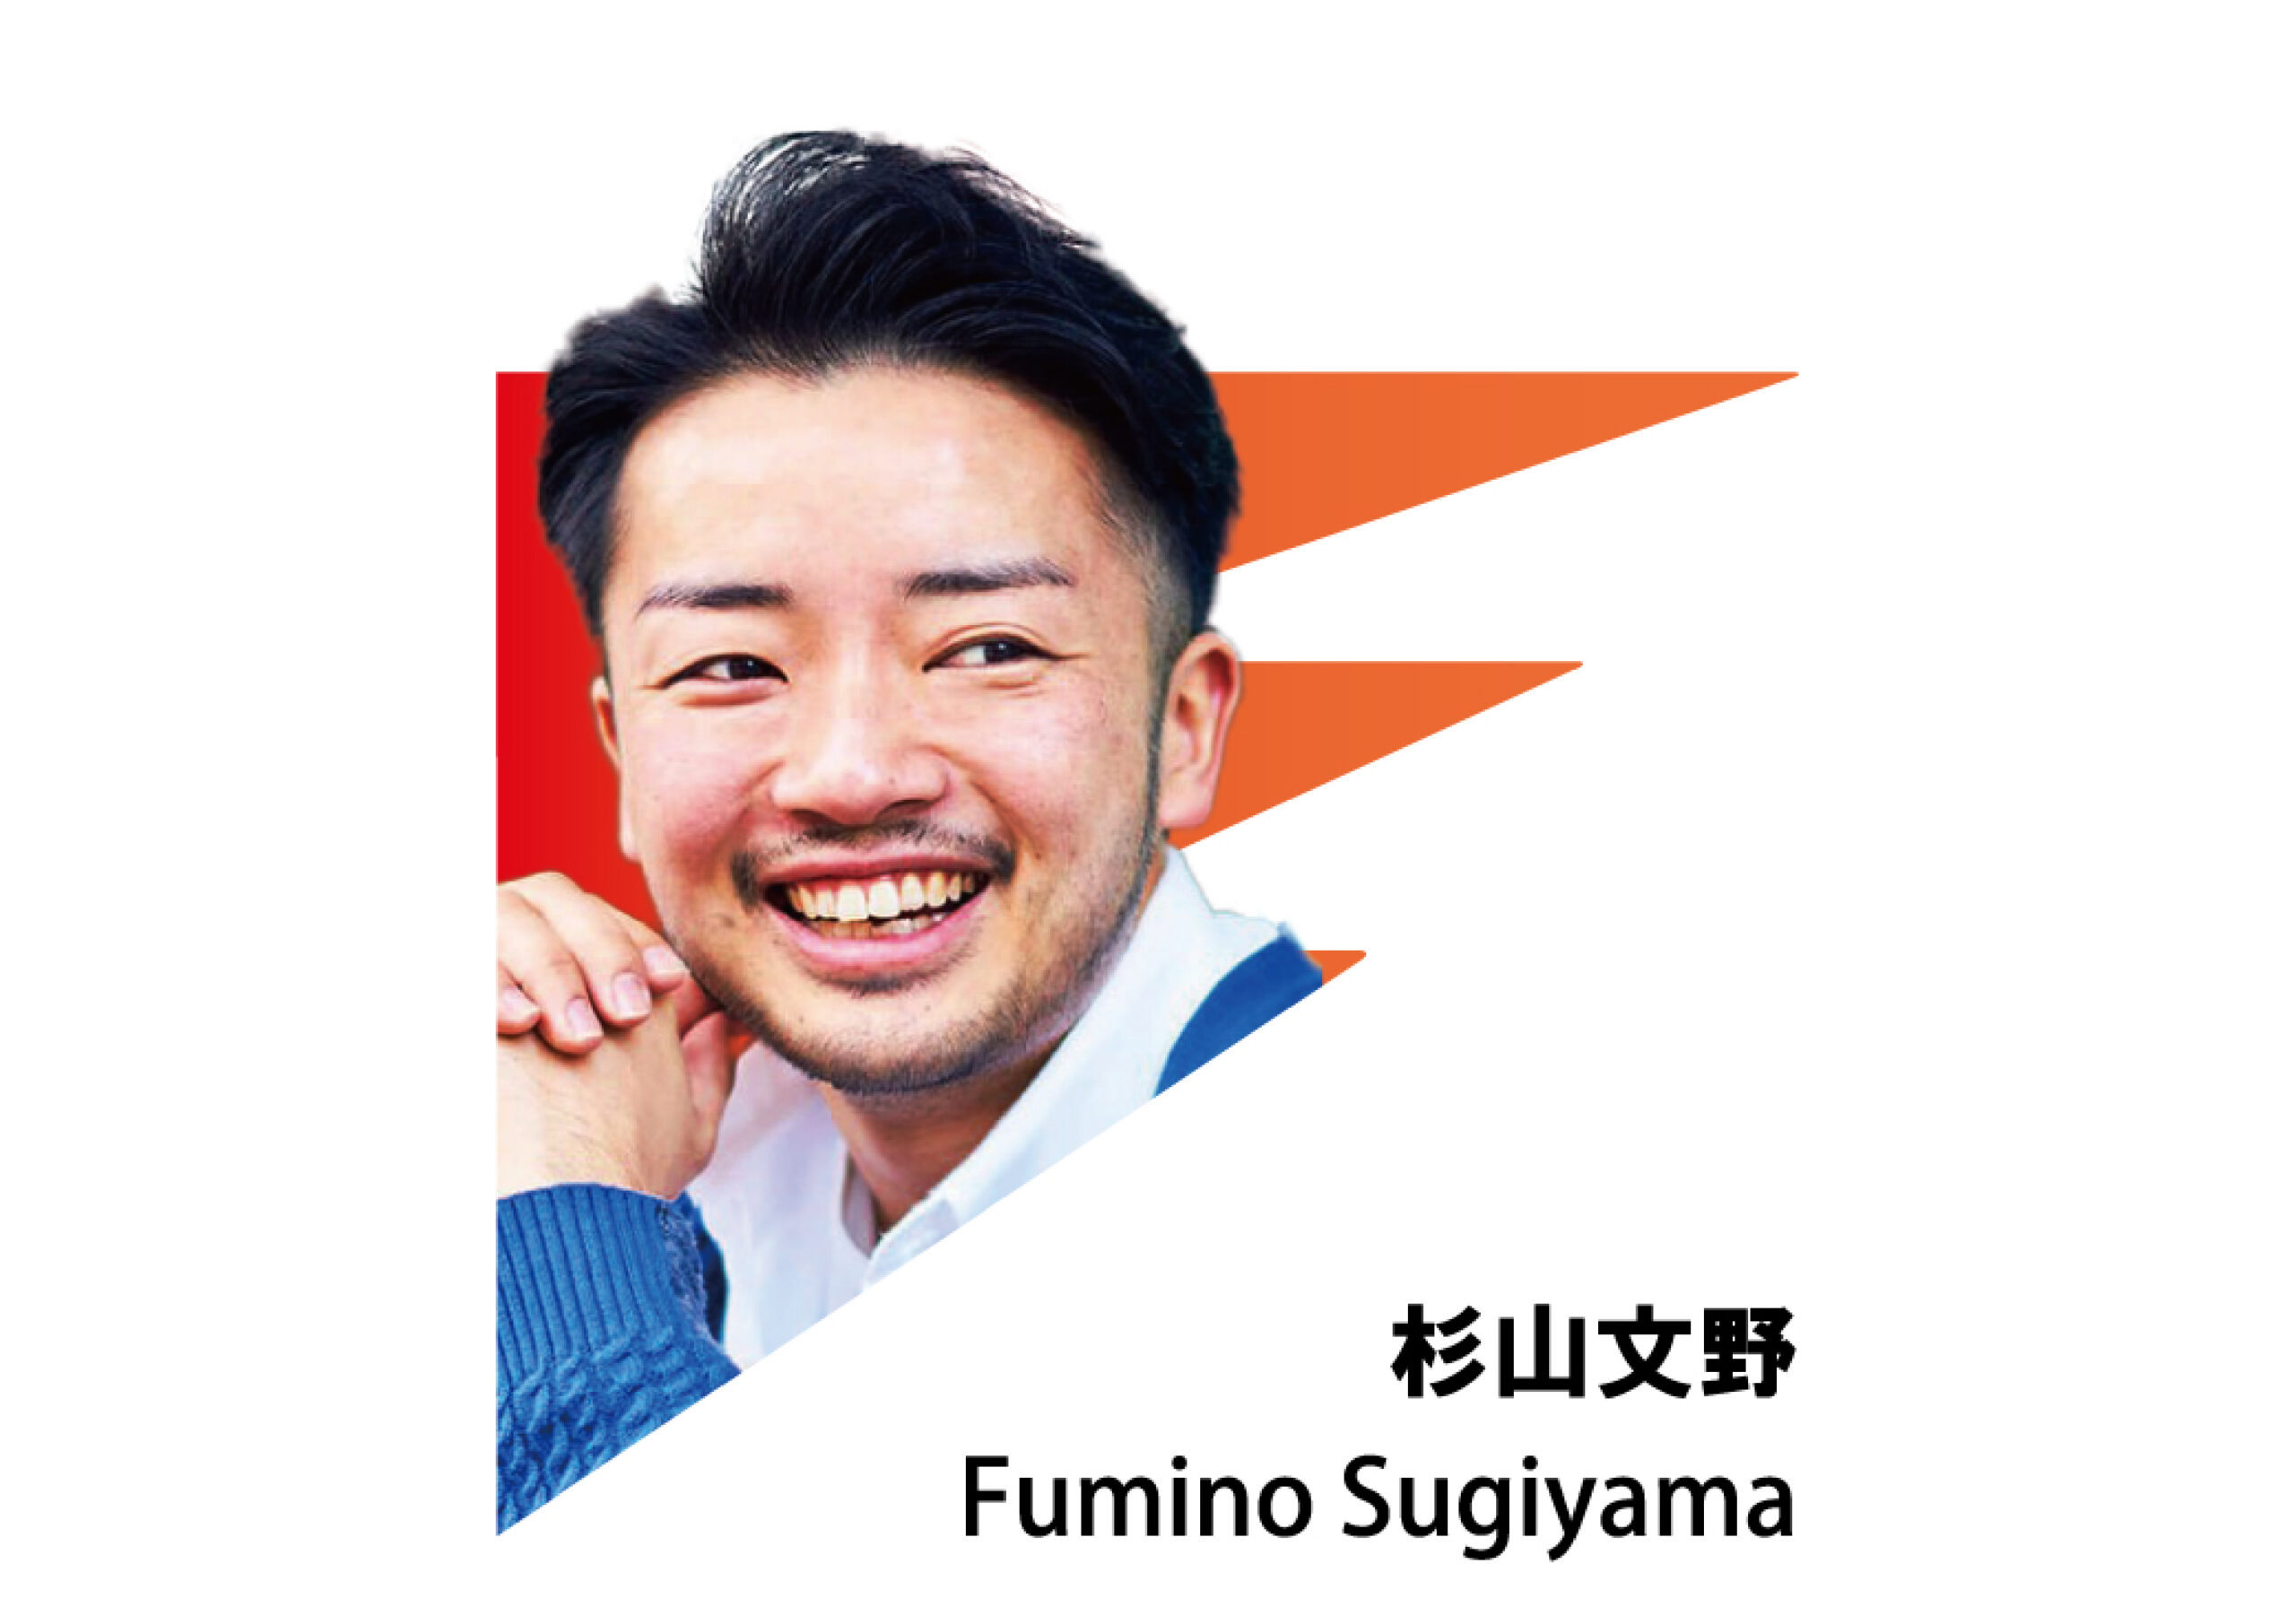 FUMINO SUGIYAMA